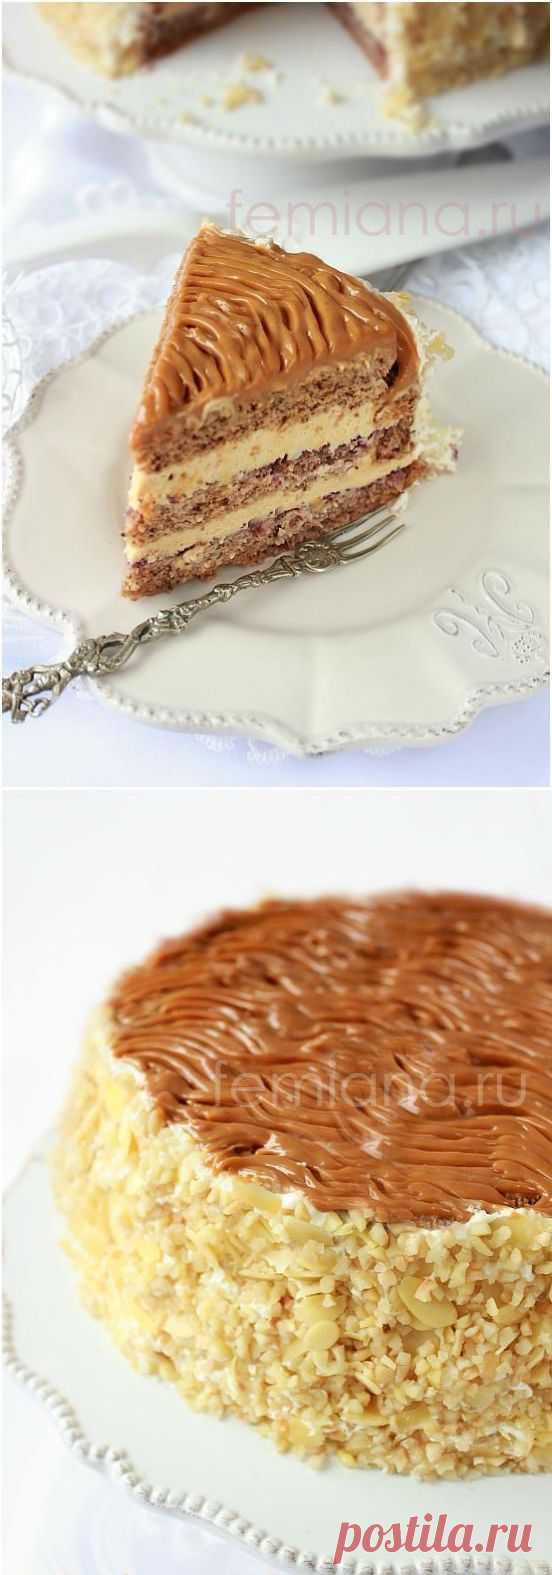 Бисквитный торт с орехами и сливочным кремом на вареной сгущенке | FEMIANA